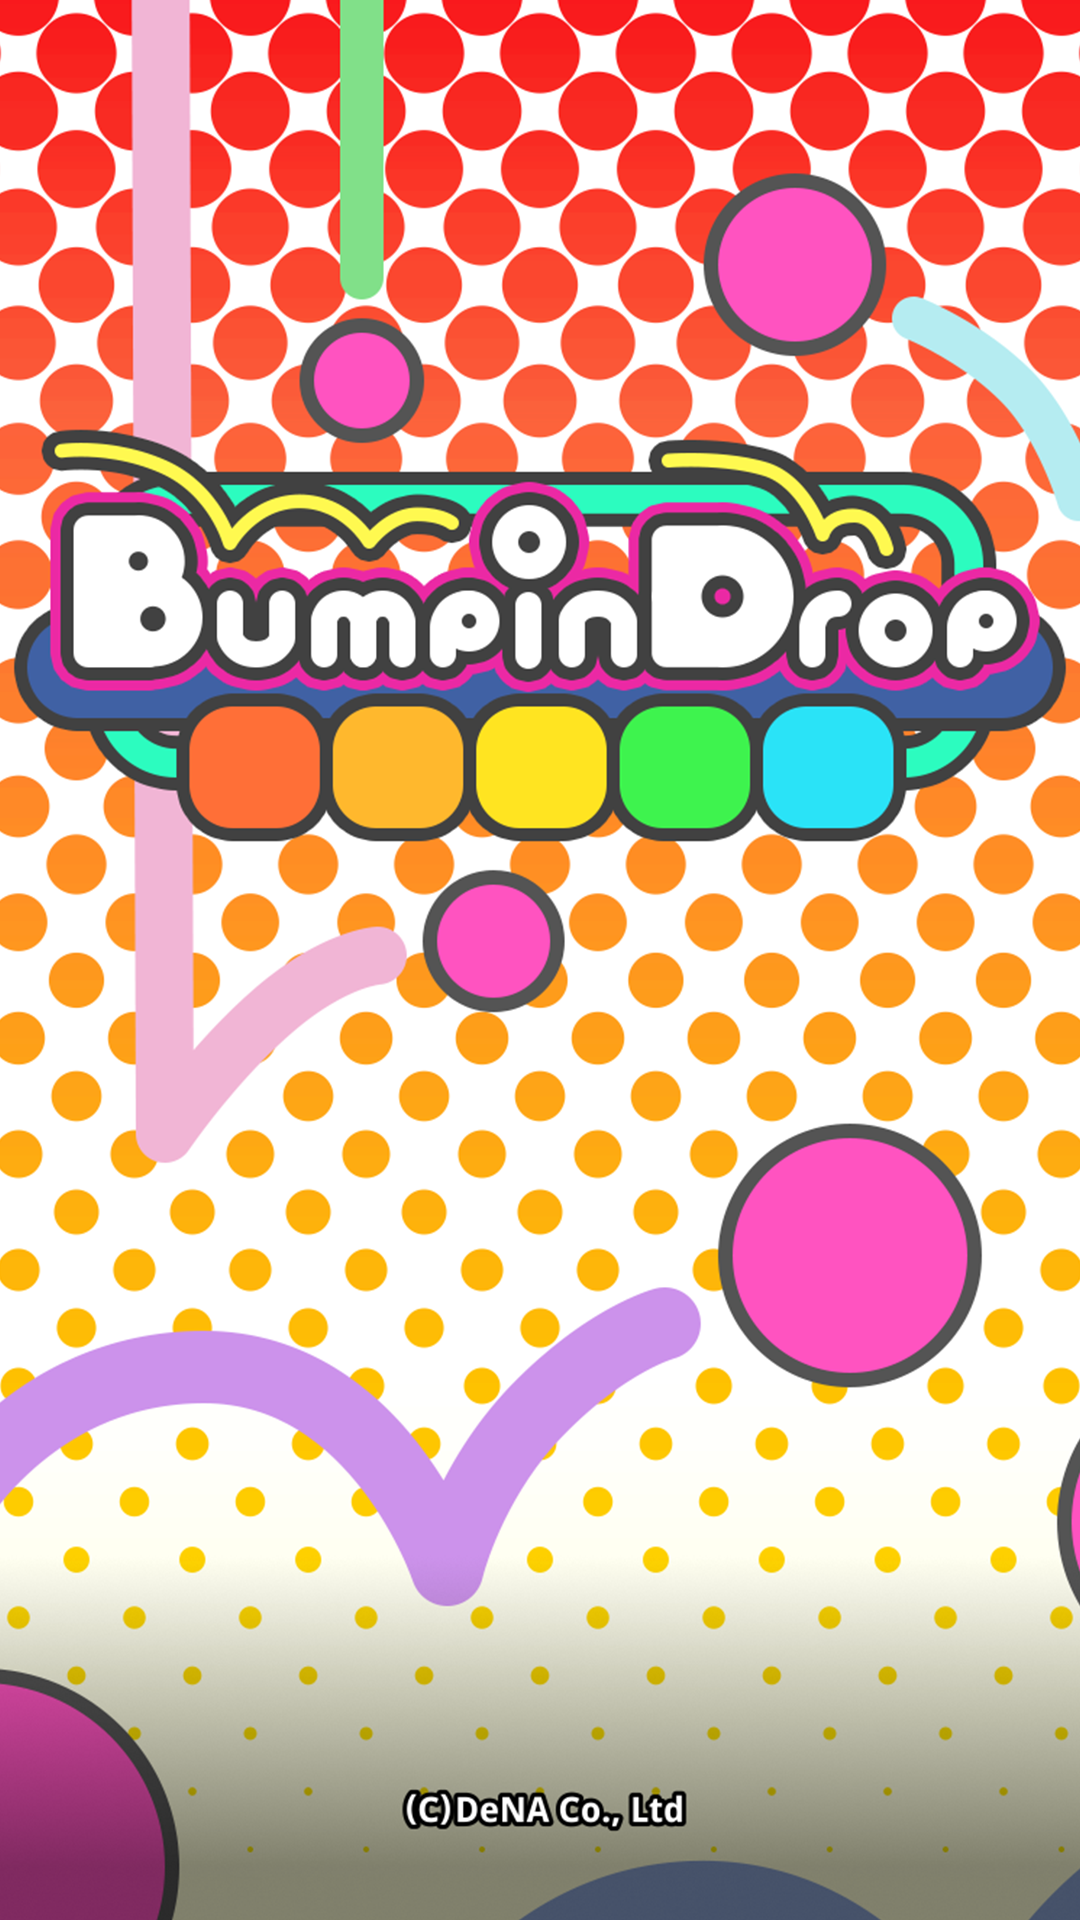 Bumpin Drop 게임 스크린 샷